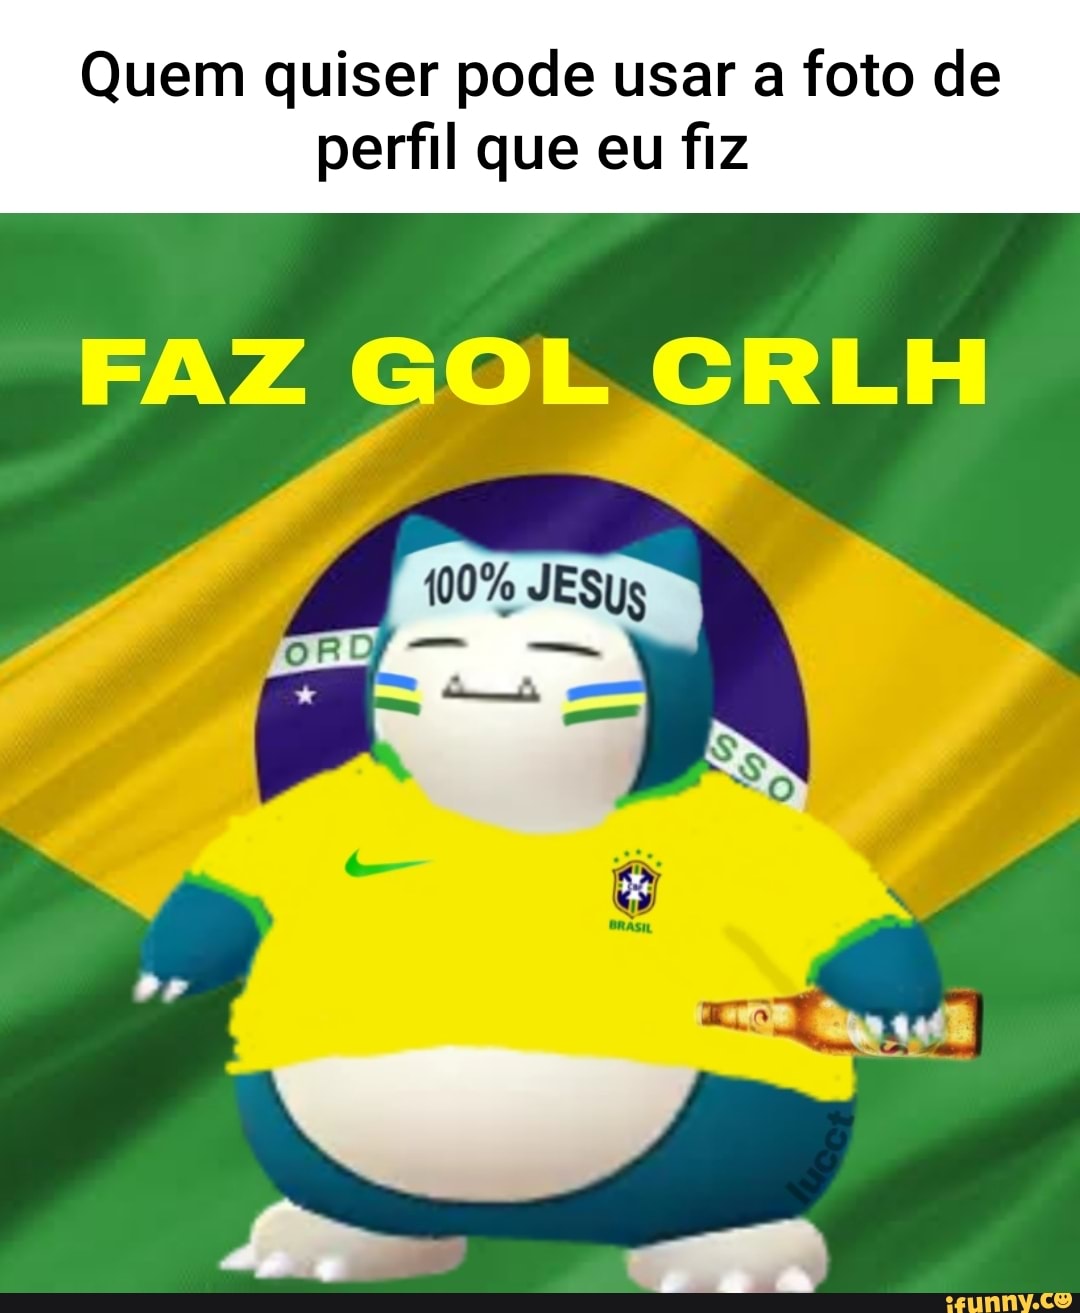 Memes de vídeo 5rOjnu548 por nasadoc: 236 comentários - iFunny Brazil